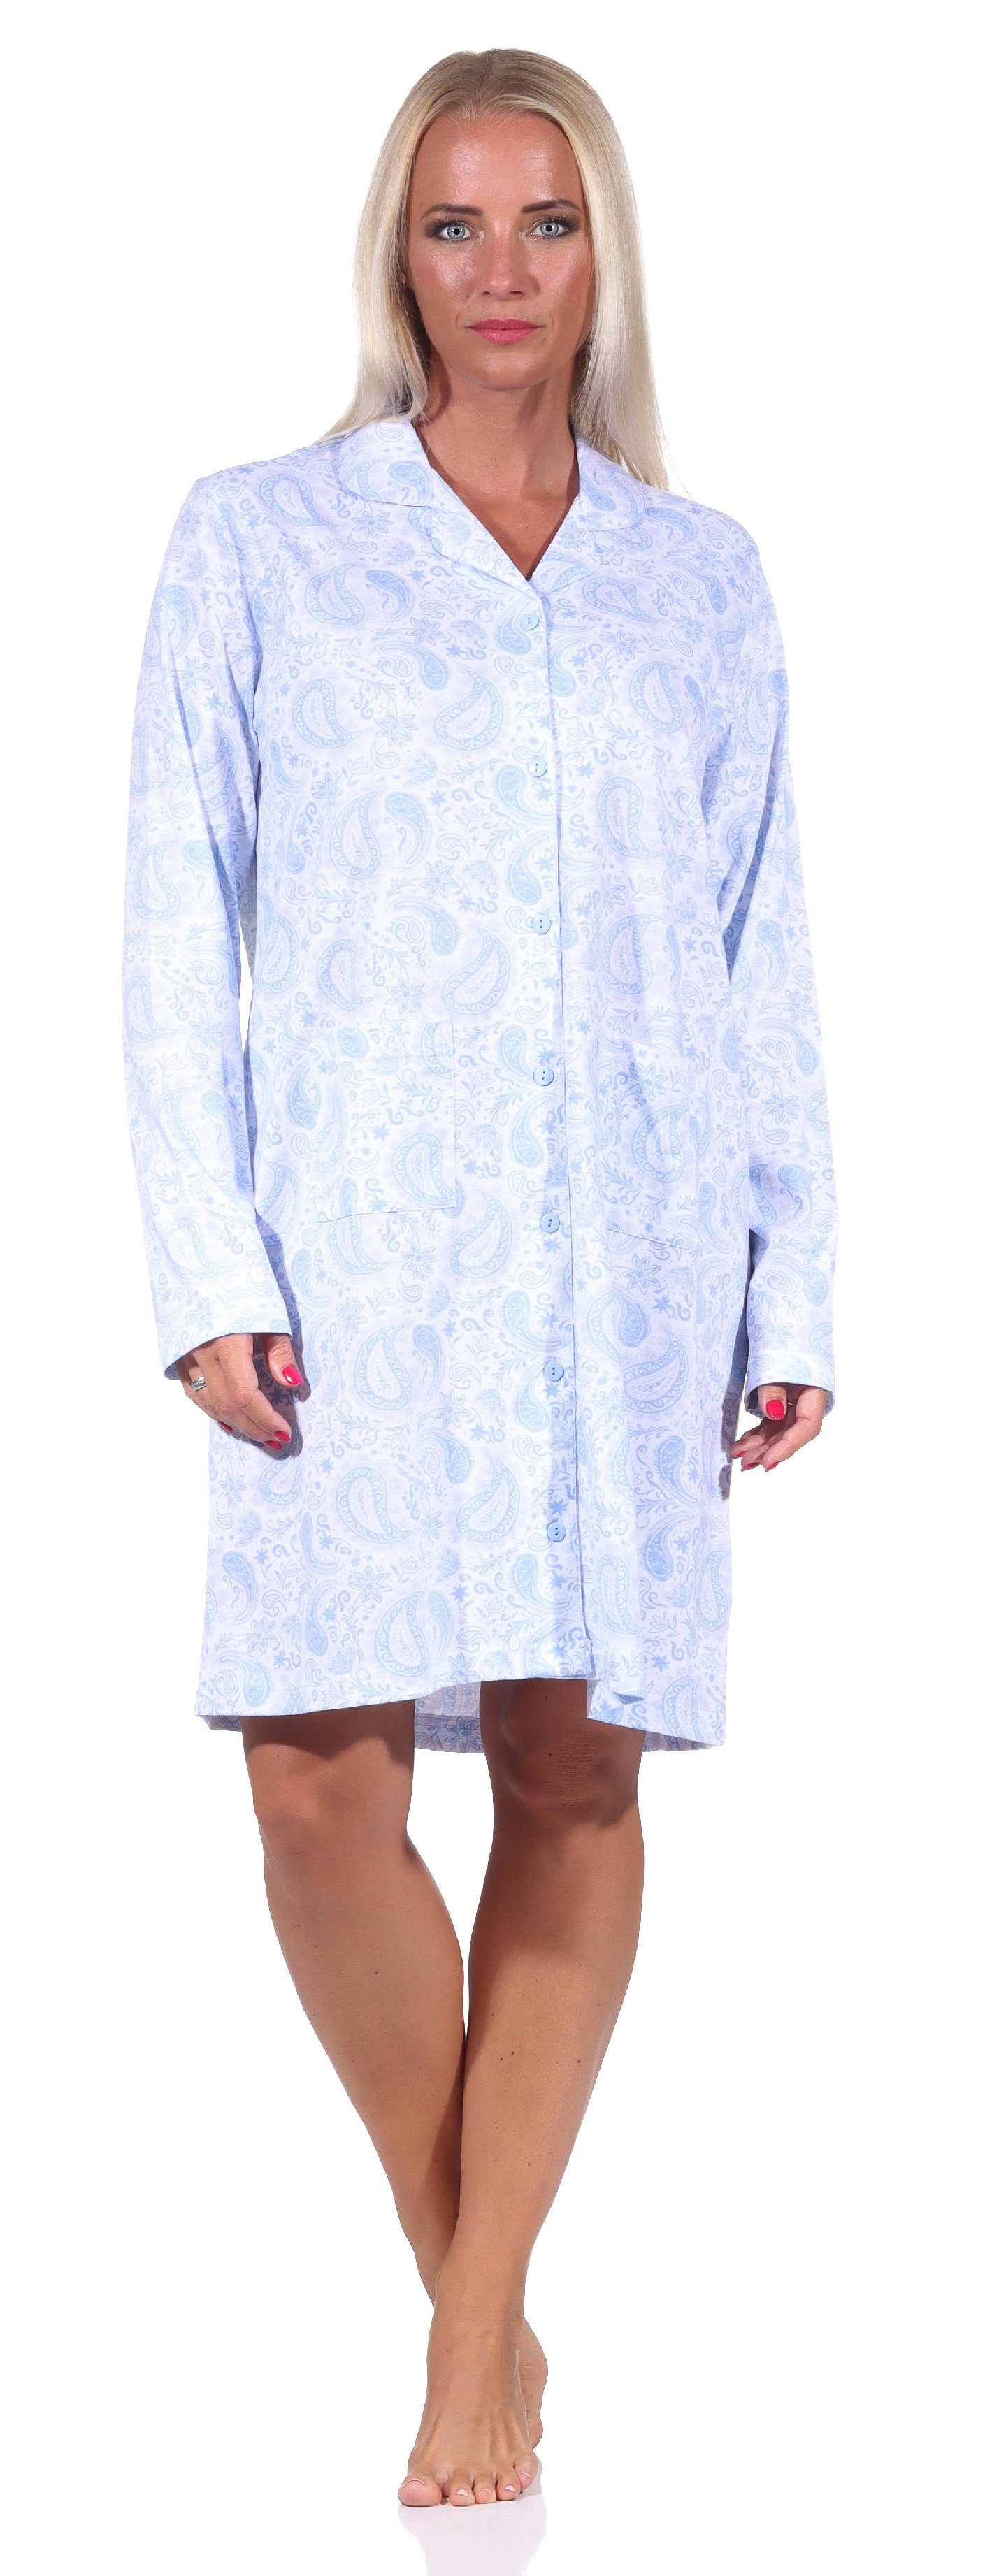 Normann Nachthemd Edles Damen Nachthemd langarm zum durchknöpfen in Jersey Qualität hellblau